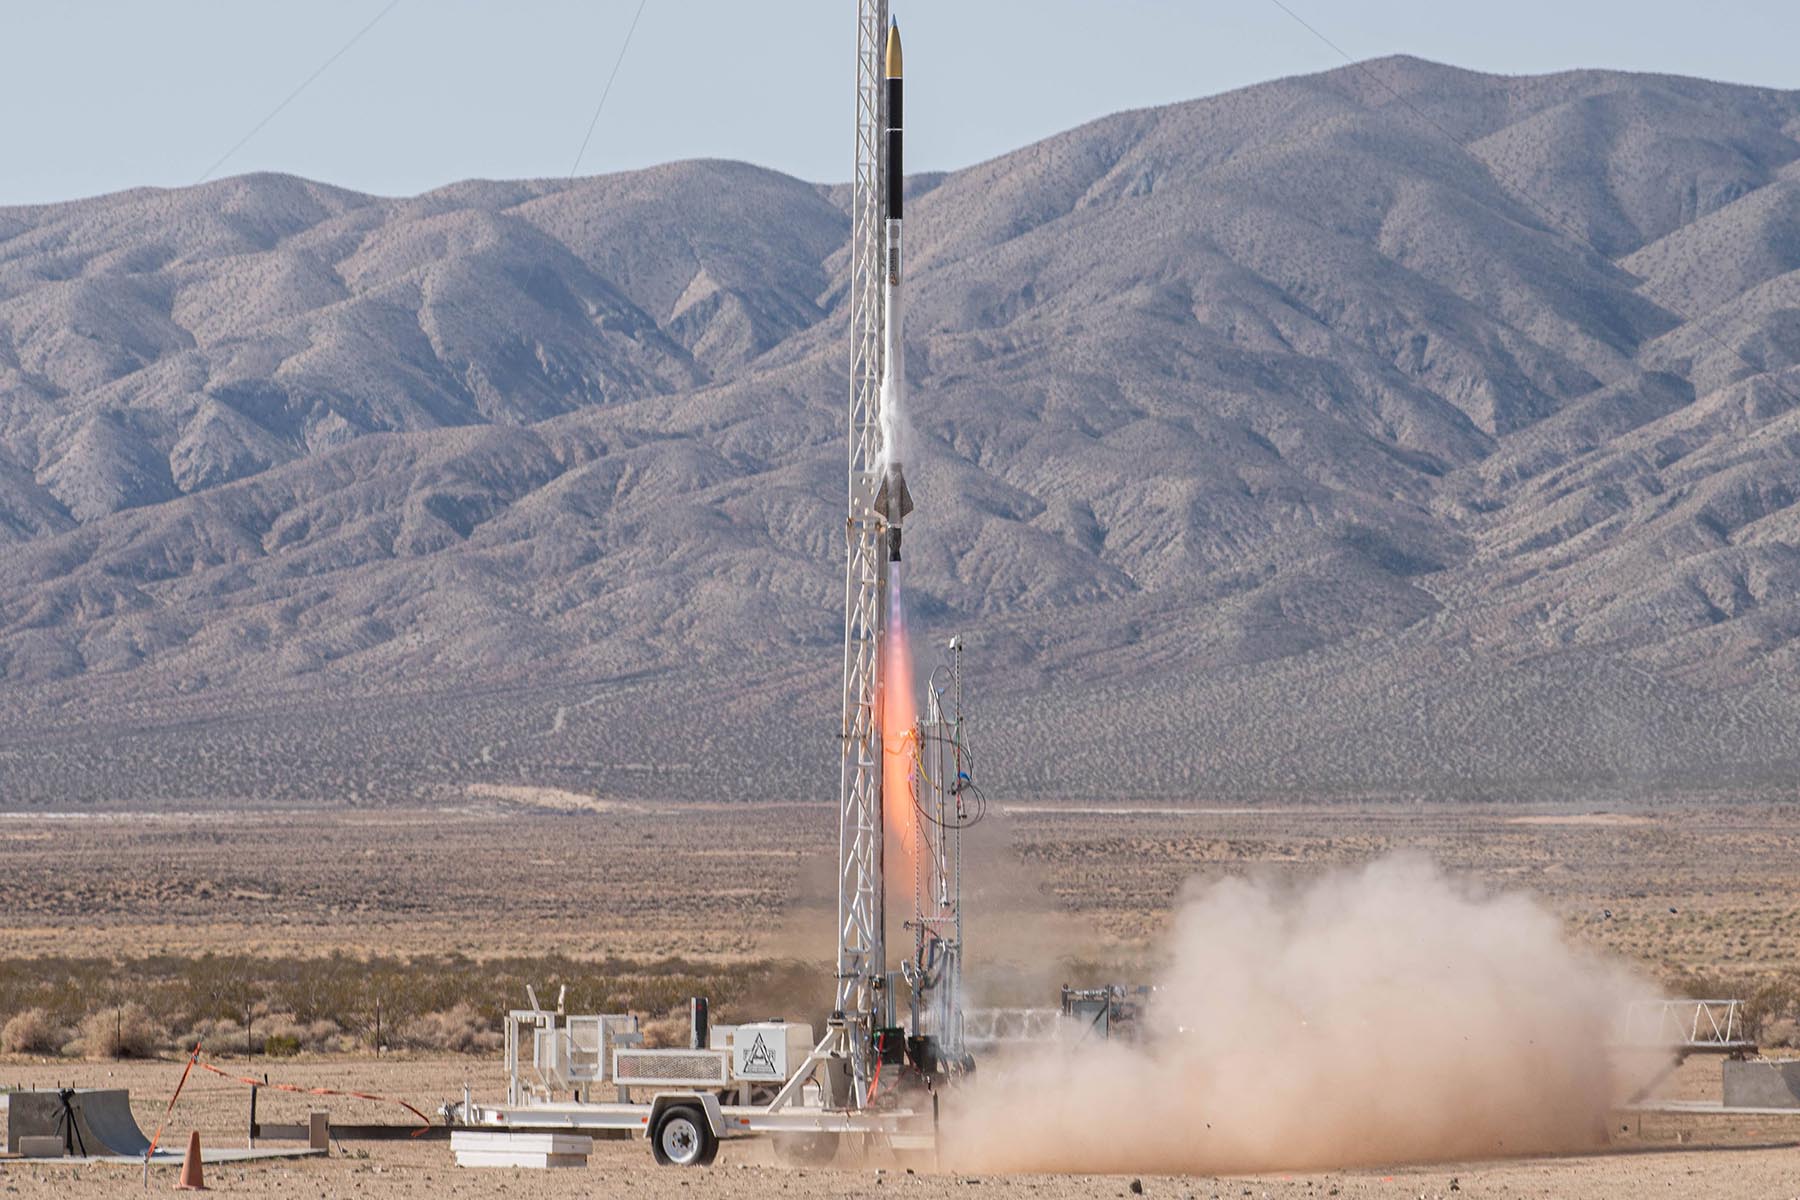 Purdue Space Program Zoomie Zoomie B liquid methane rocket